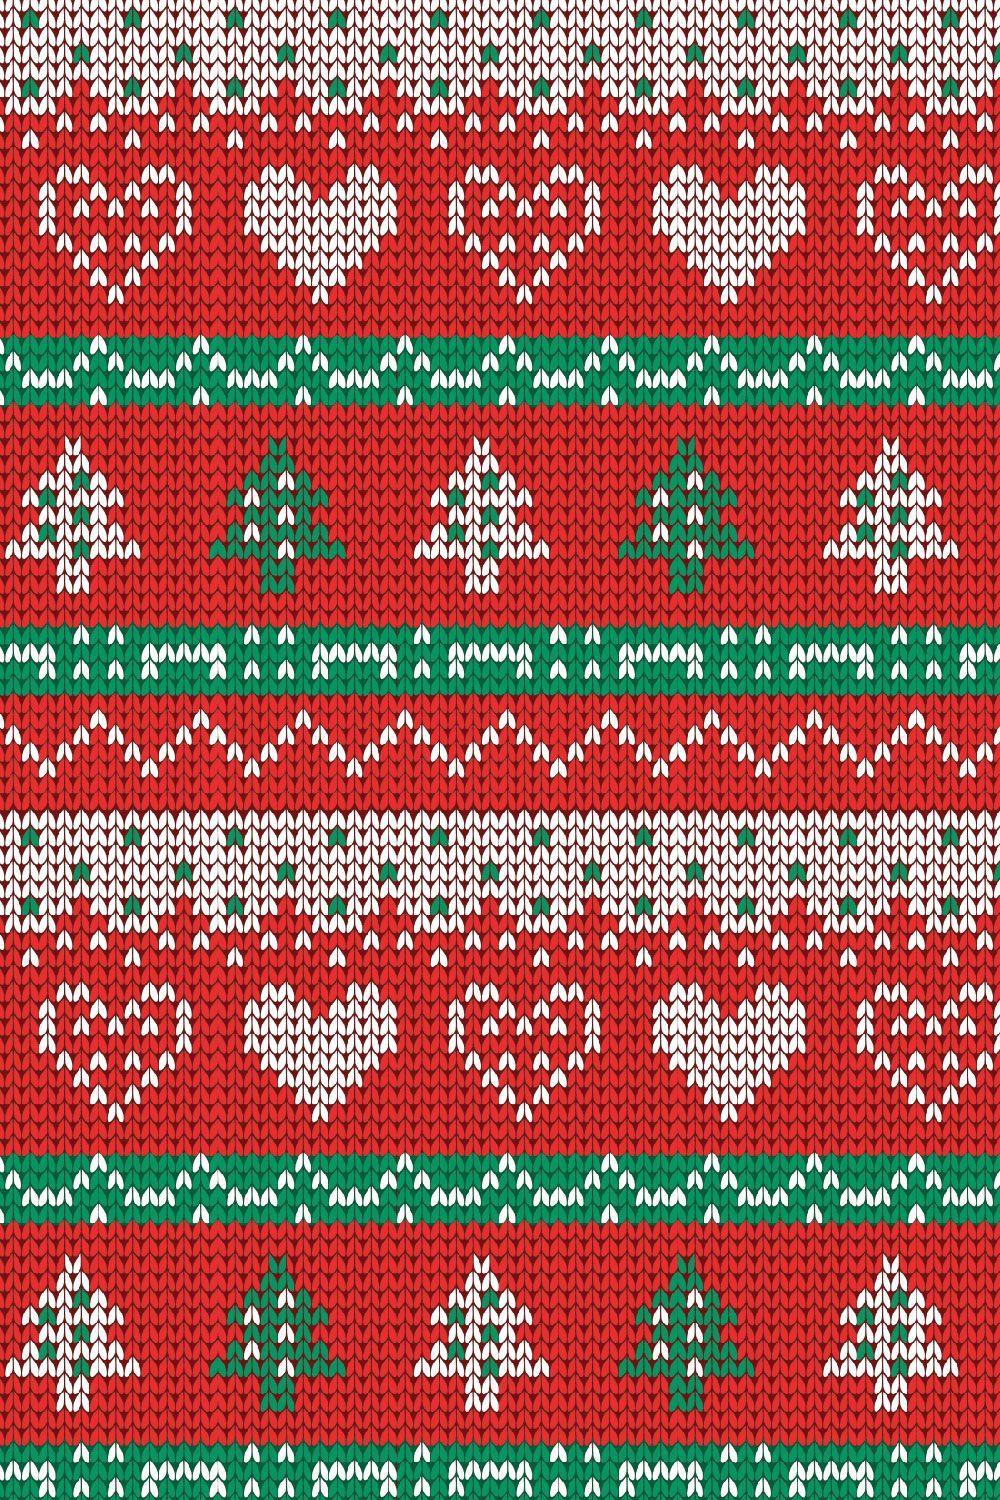 Áo len Giáng sinh là món đồ không thể thiếu trong kỳ nghỉ đặc biệt này. Và bây giờ, bạn có thể sở hữu một bộ hình nền áo len Giáng sinh cực kỳ đẹp mắt hoàn toàn miễn phí. Hầu hết các màu sắc, họa tiết và kiểu dáng đều có sẵn để bạn lựa chọn. Đó là cách hoàn hảo để mang đến không gian Giáng sinh ấm cúng và đầy cảm hứng.